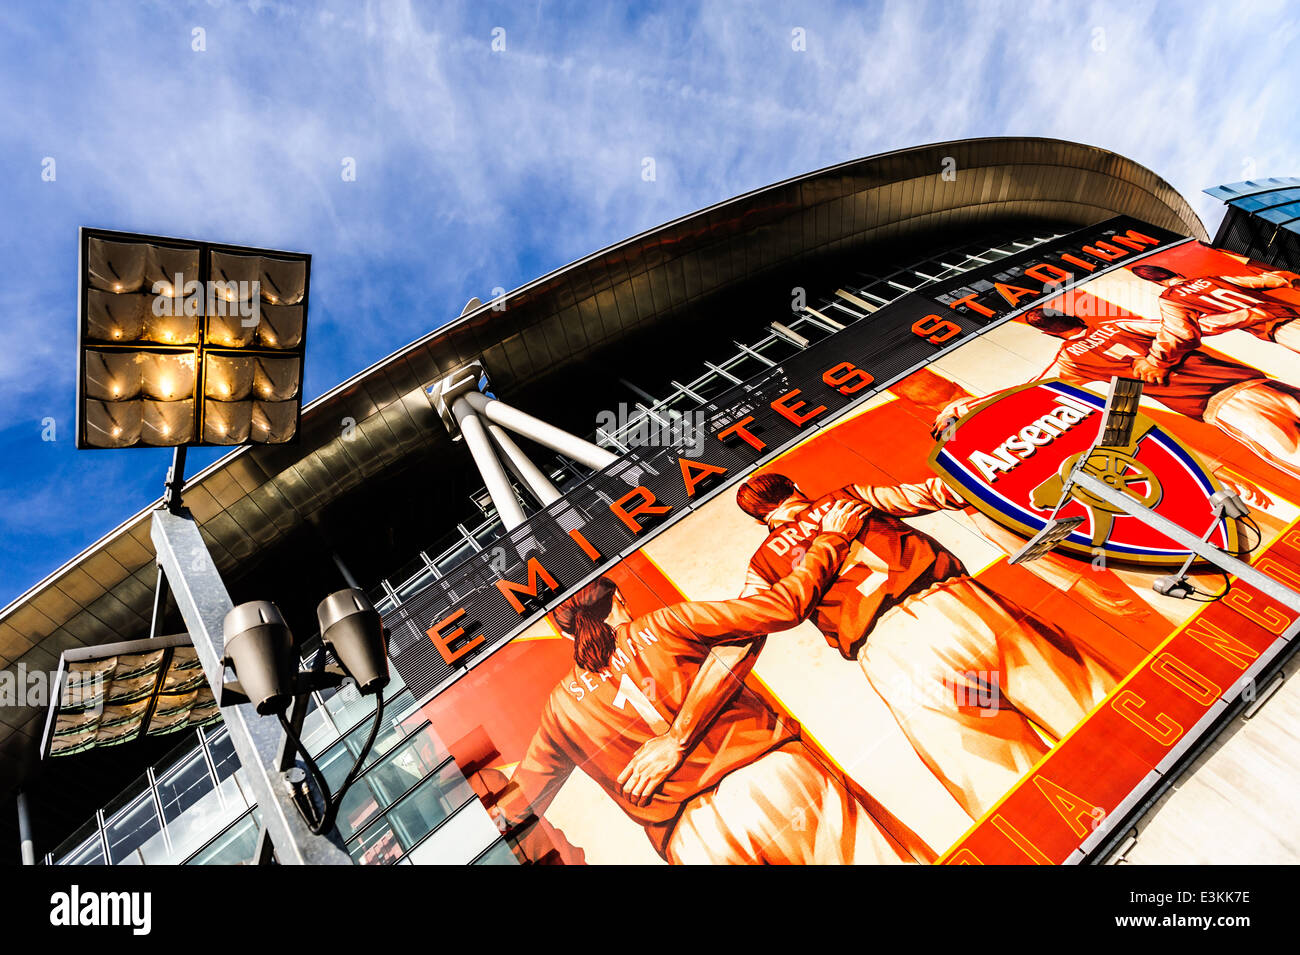 Vorderseite des Emirates Stadium von Arsenal Football Club. Stockfoto